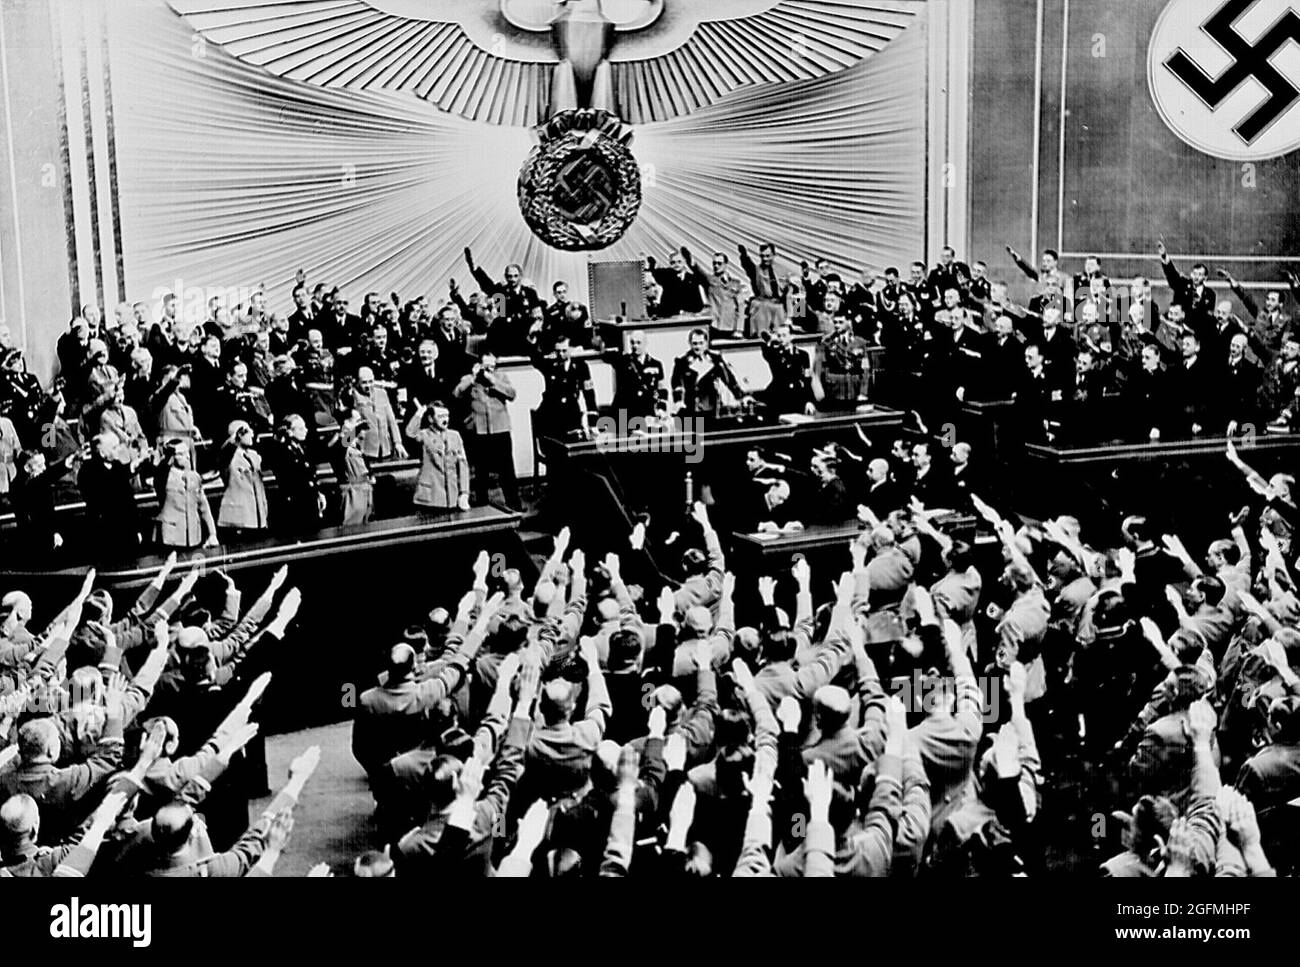 Hitler akzeptiert die Ovation des Reichstags, nachdem er die "friedliche" Übernahme Österreichs angekündigt hat. Aus dem Material der US National Archives and Records: Stockfoto